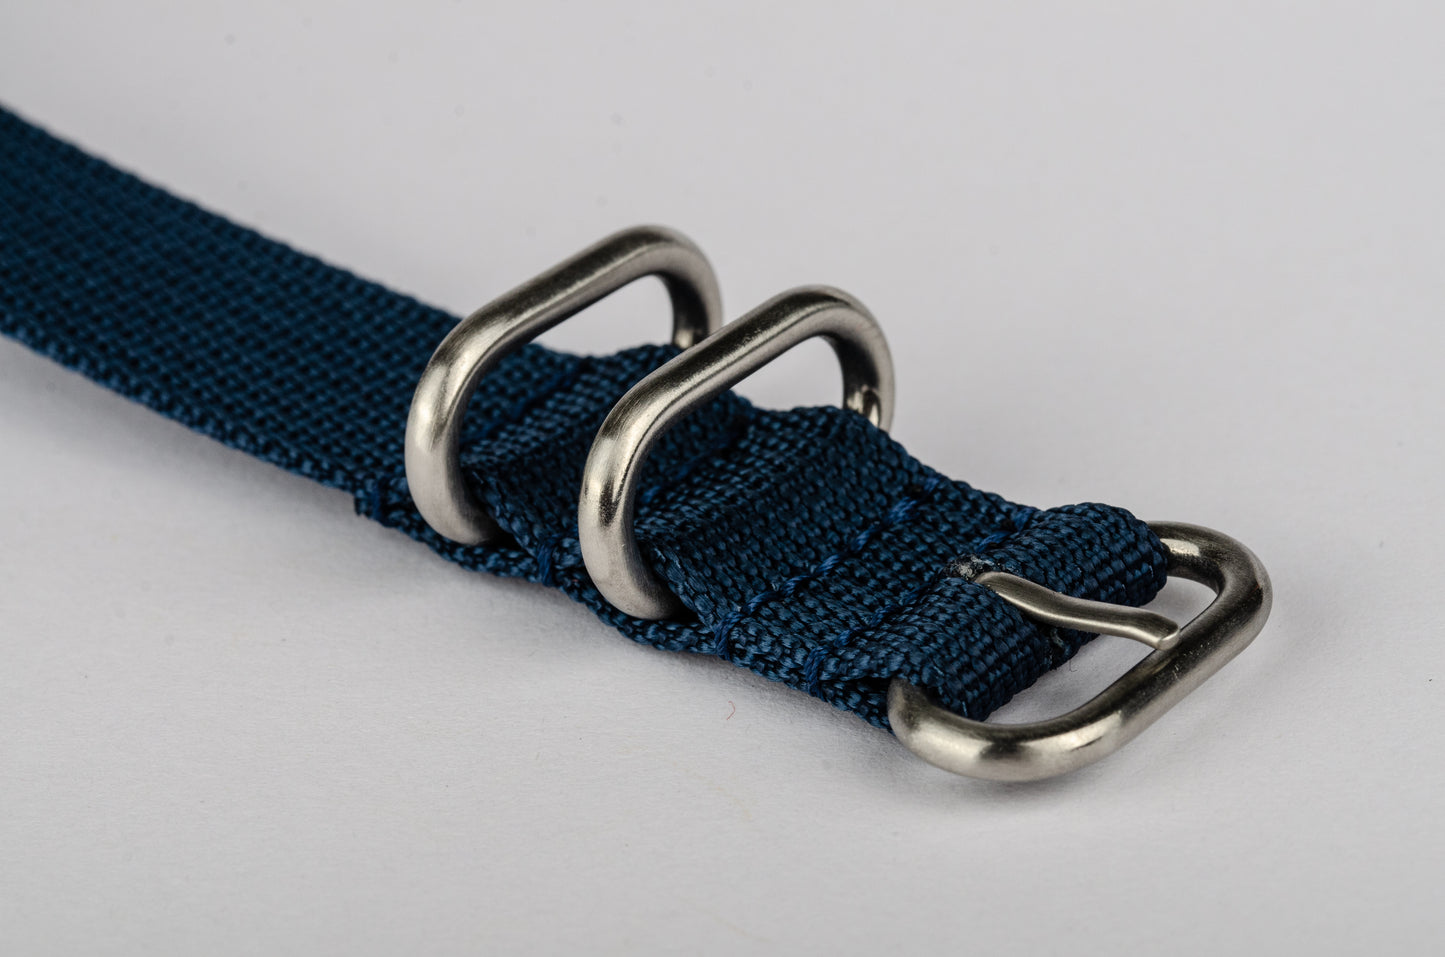 Klockarmband Nylon: Mörkblå med SS-detaljer